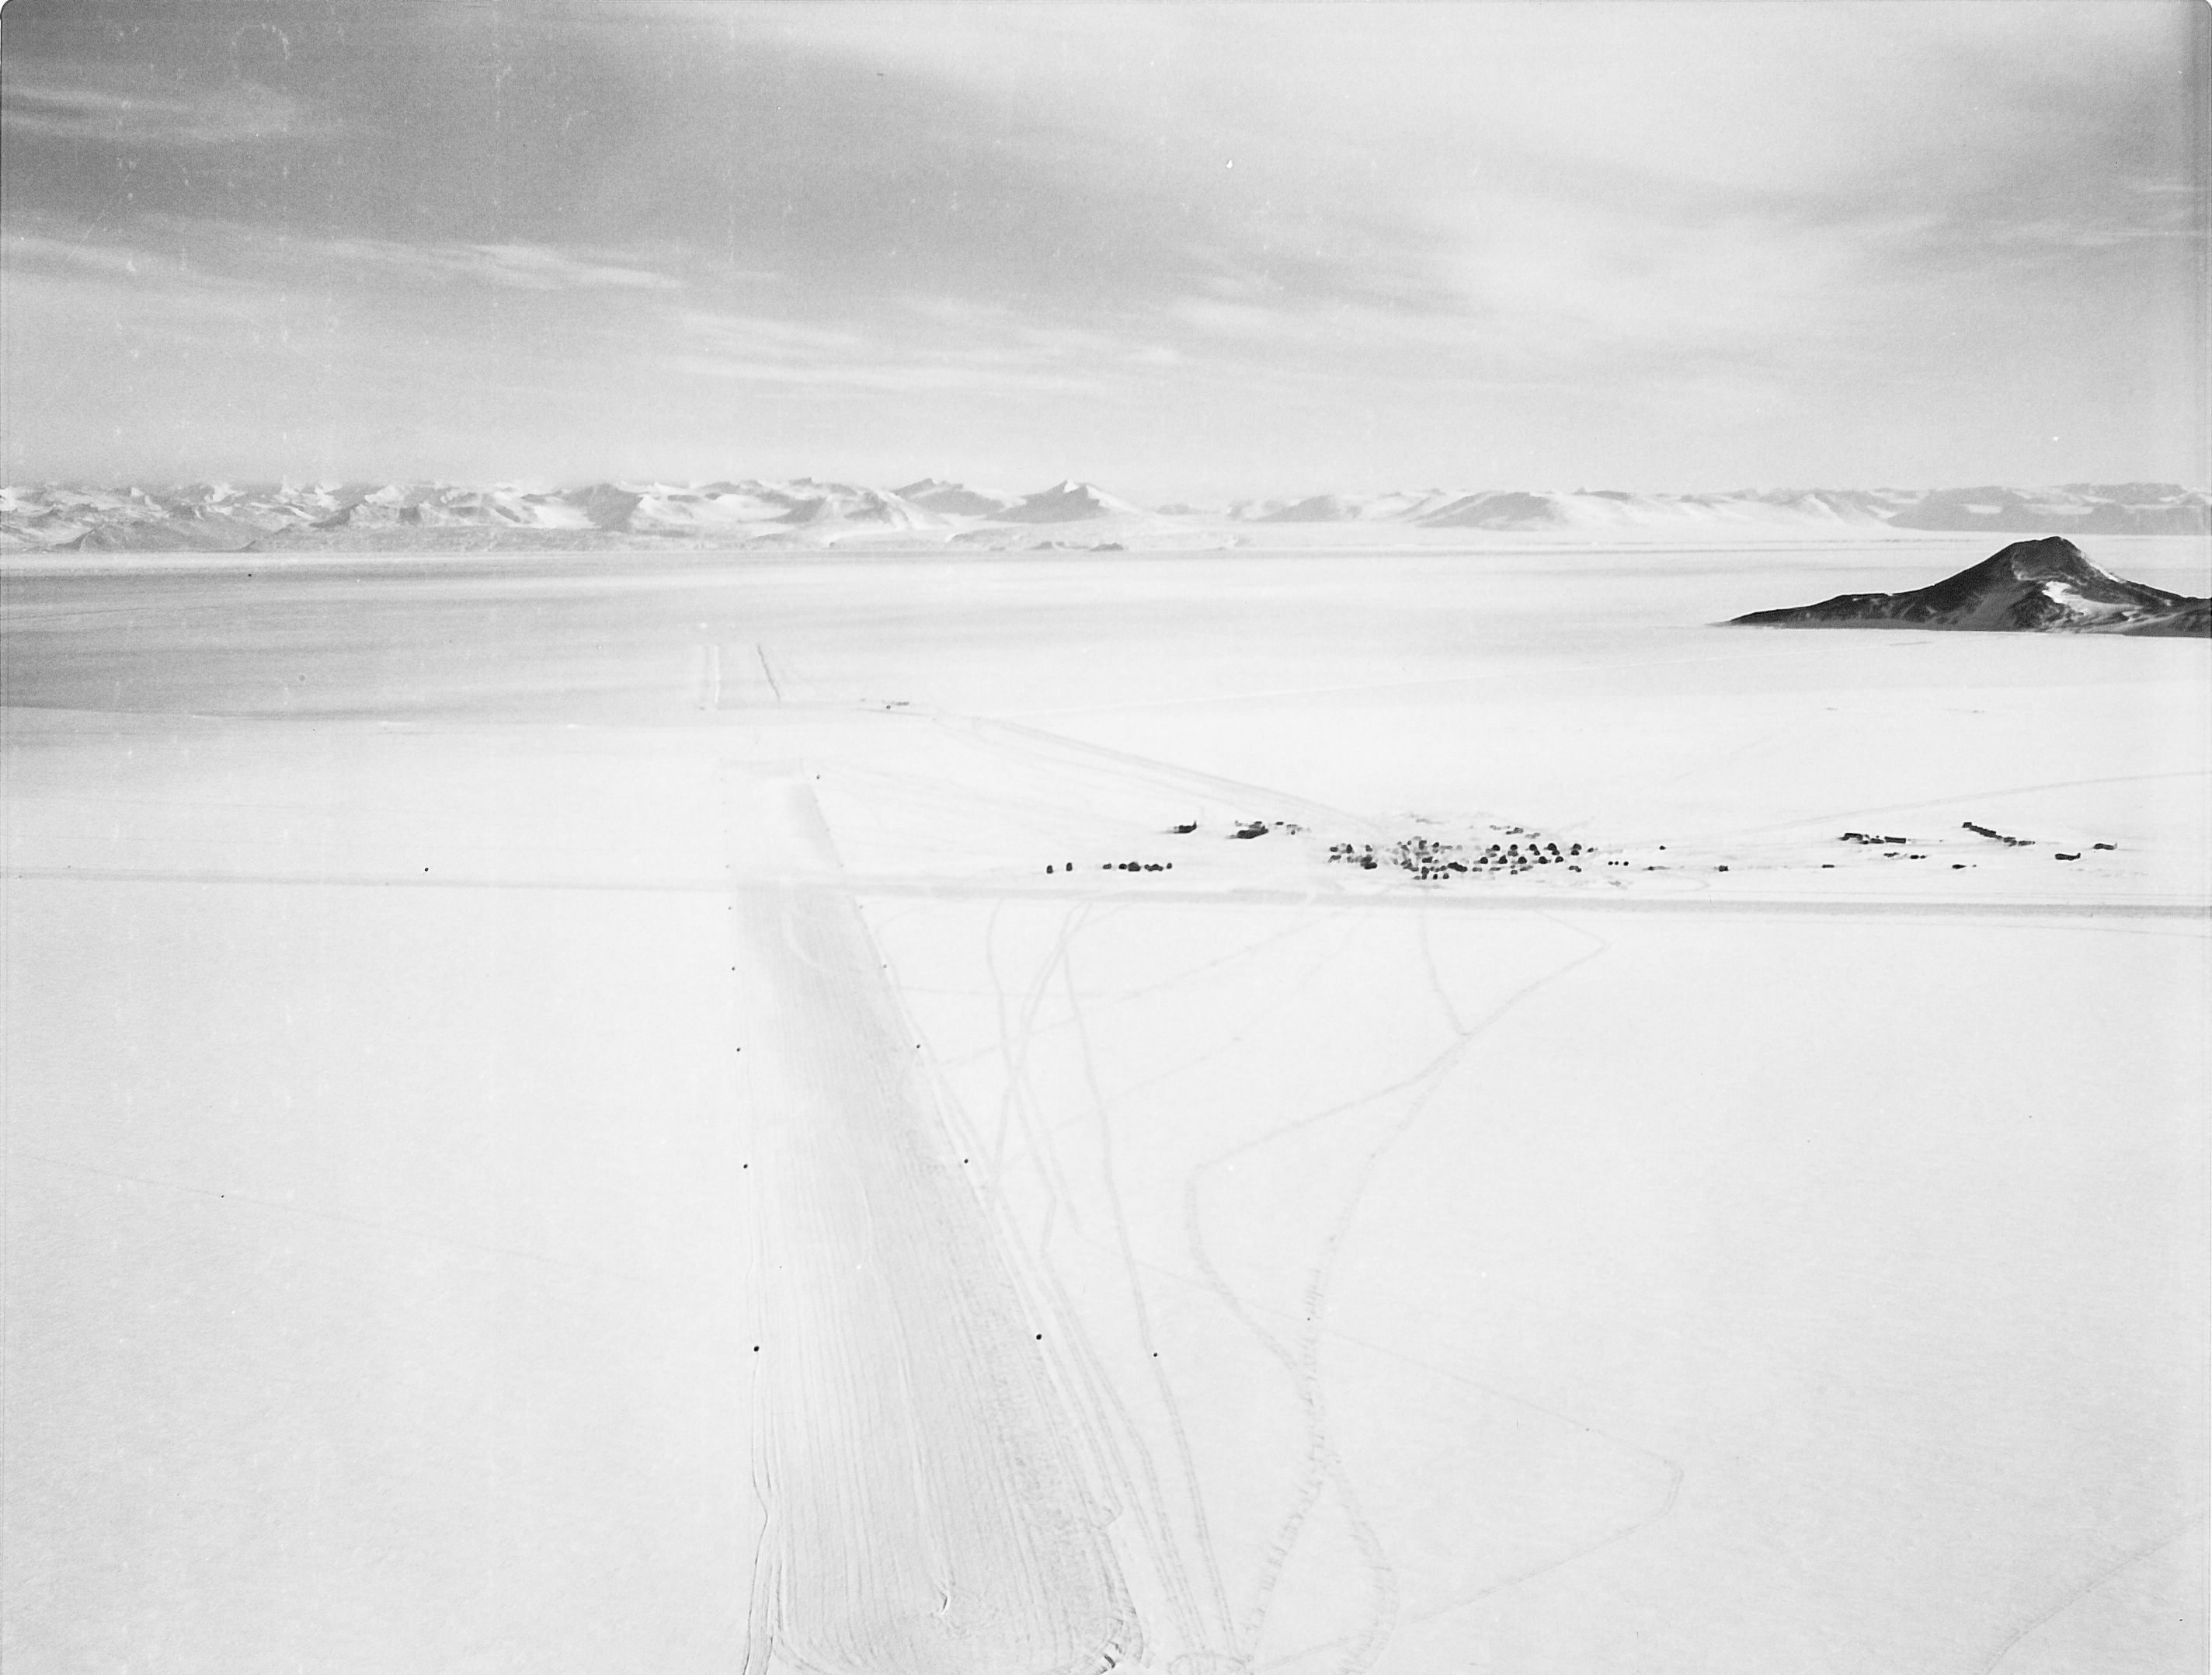 A frozen runway in a snowy landscape.